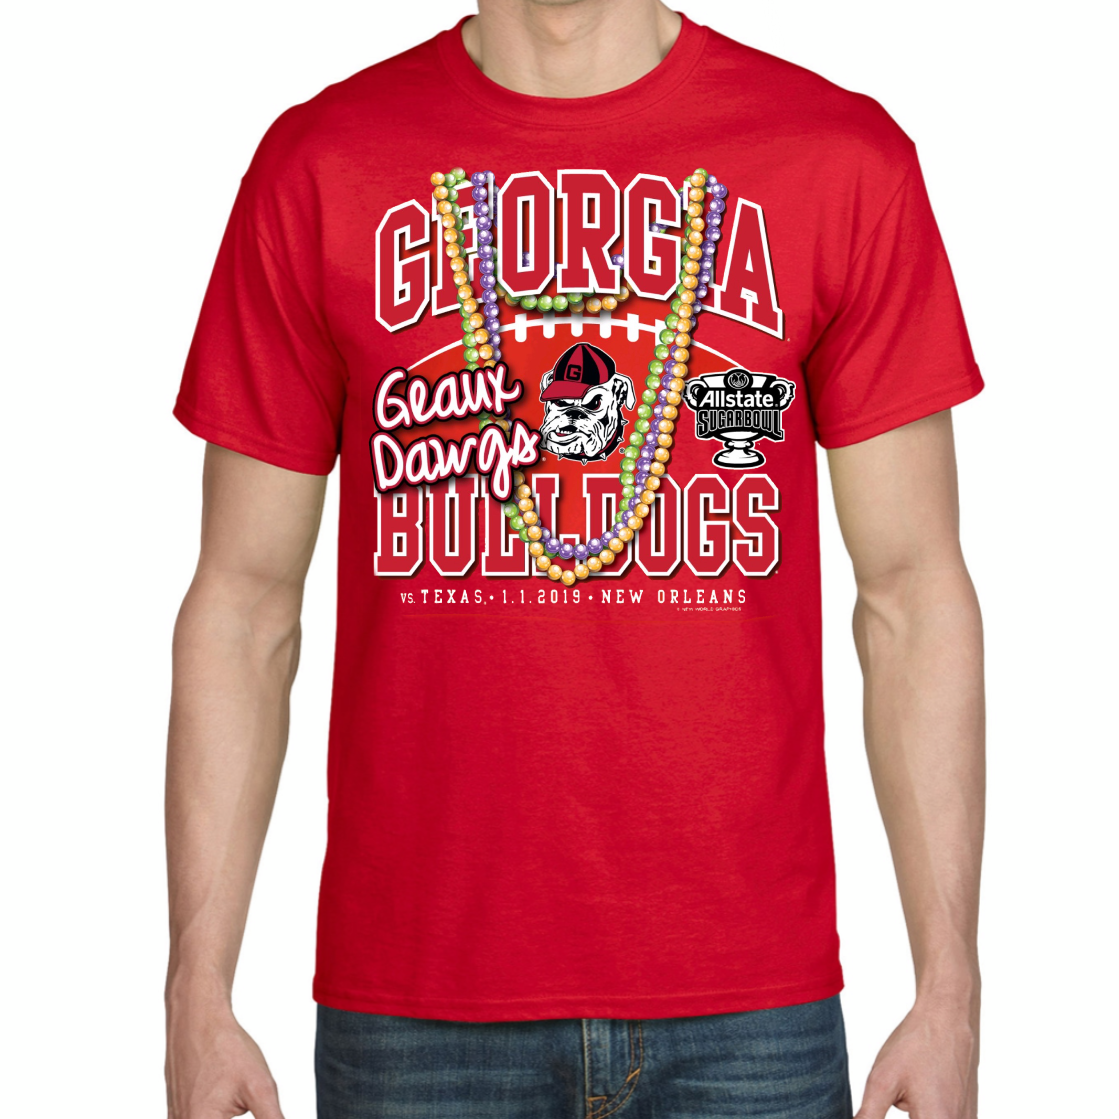 UGA/Braves Champs Shirt – RTTO Creations